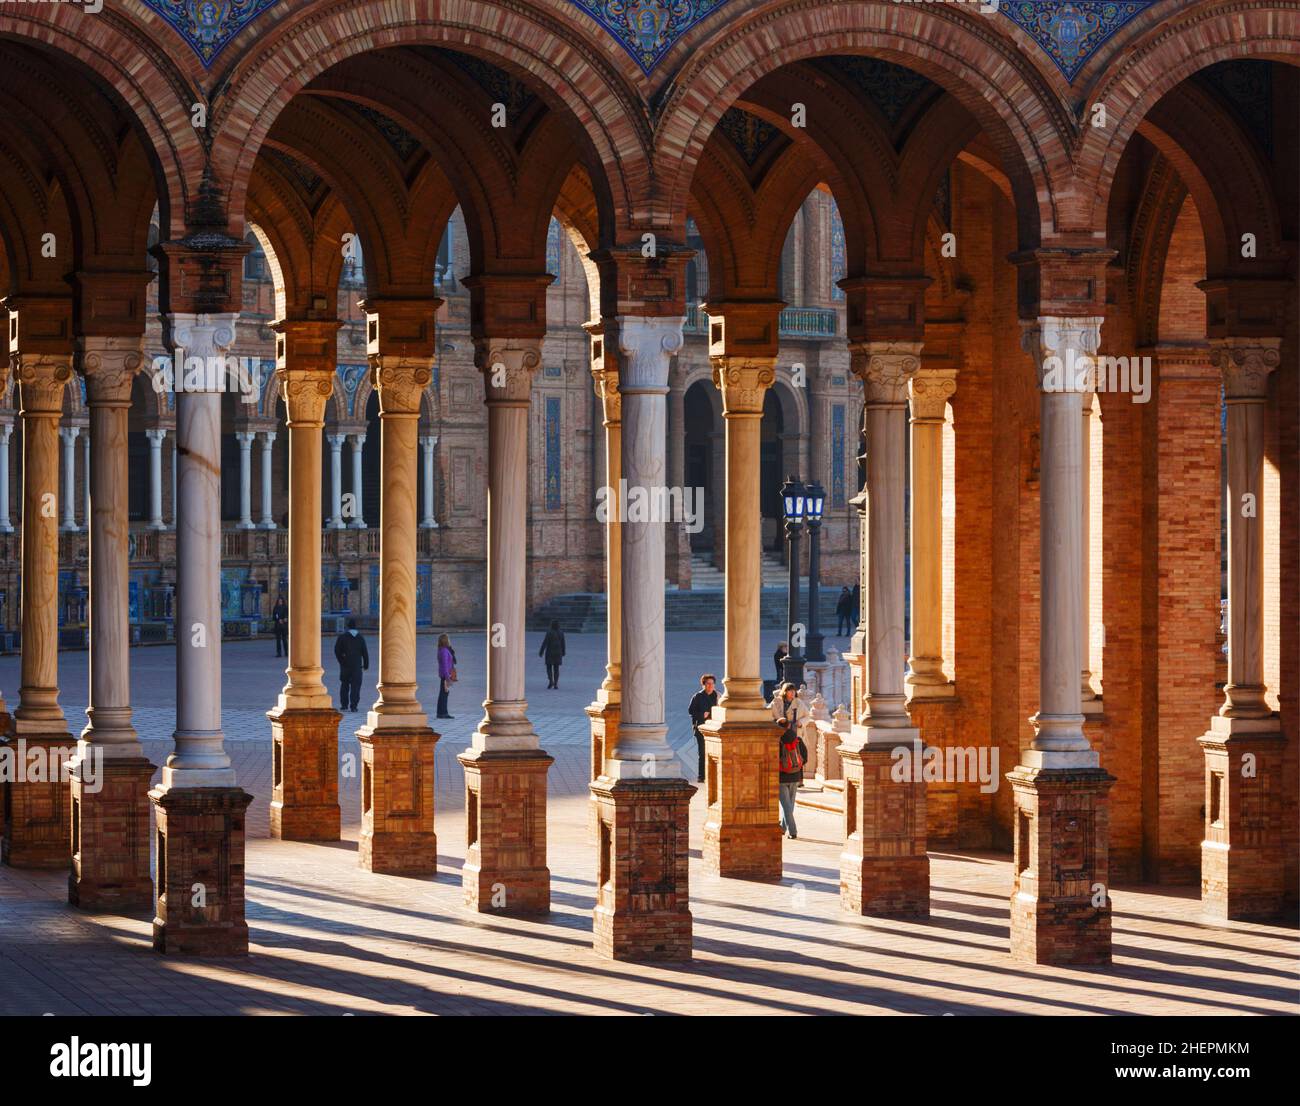 Sevilla, Provinz Sevilla, Andalusien, Südspanien. Touristen zwischen den Säulen und Bögen auf der Plaza de España. Die plaza wurde für die IB gebaut Stockfoto